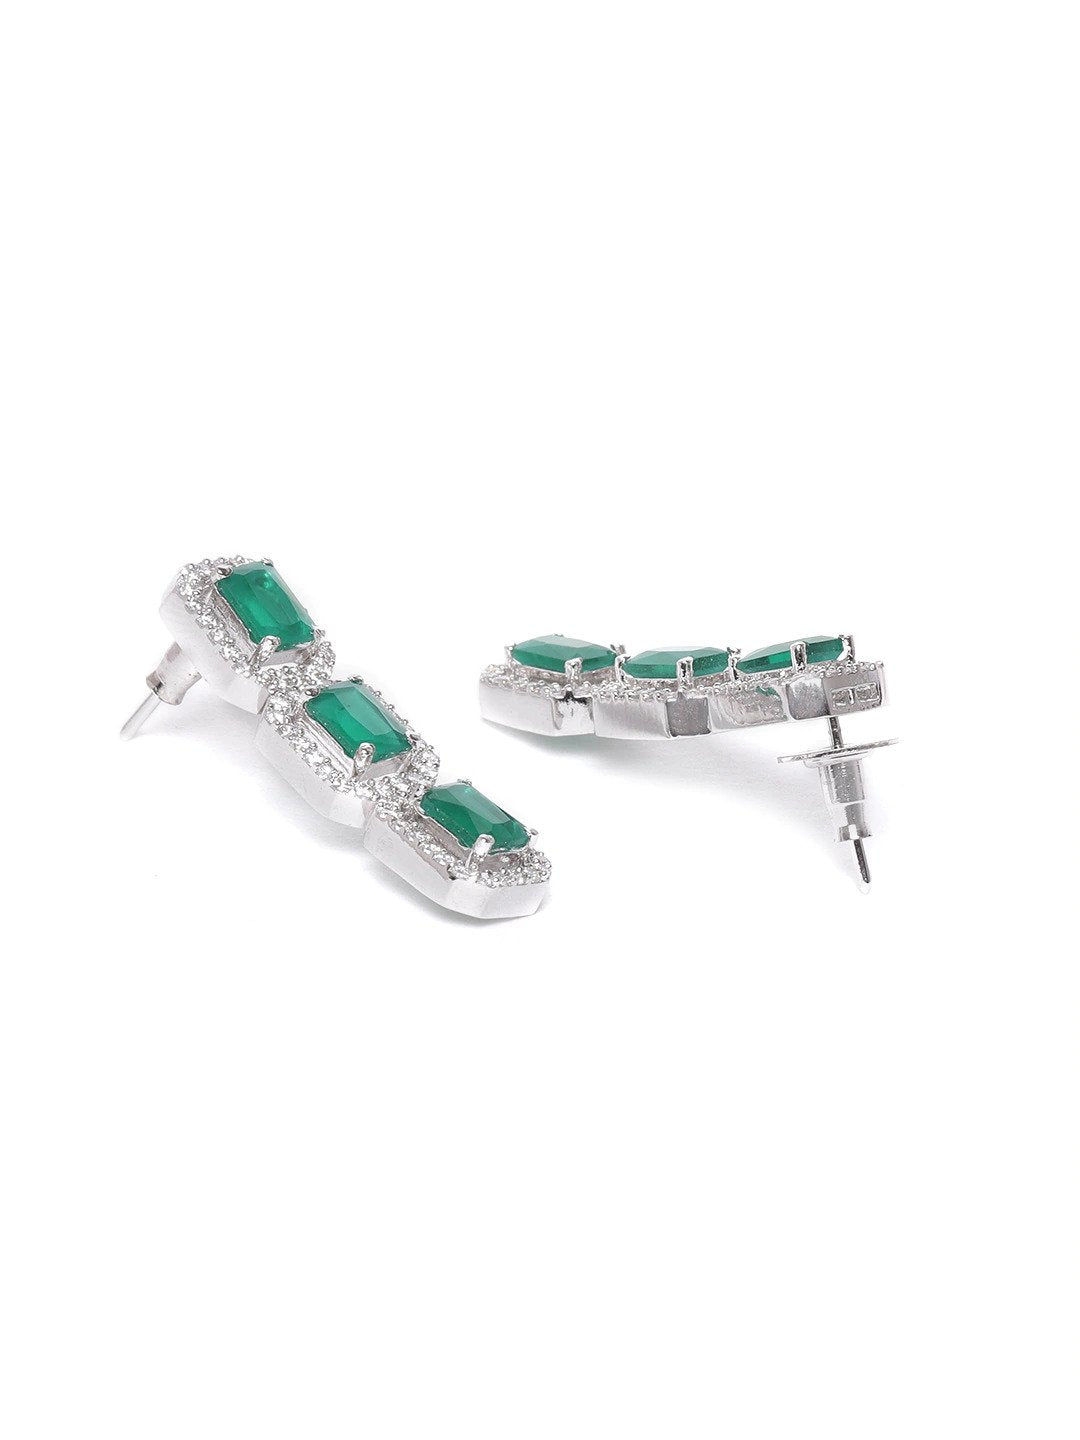 Women's Emerald American Diamond Jewellery Set - Priyaasi